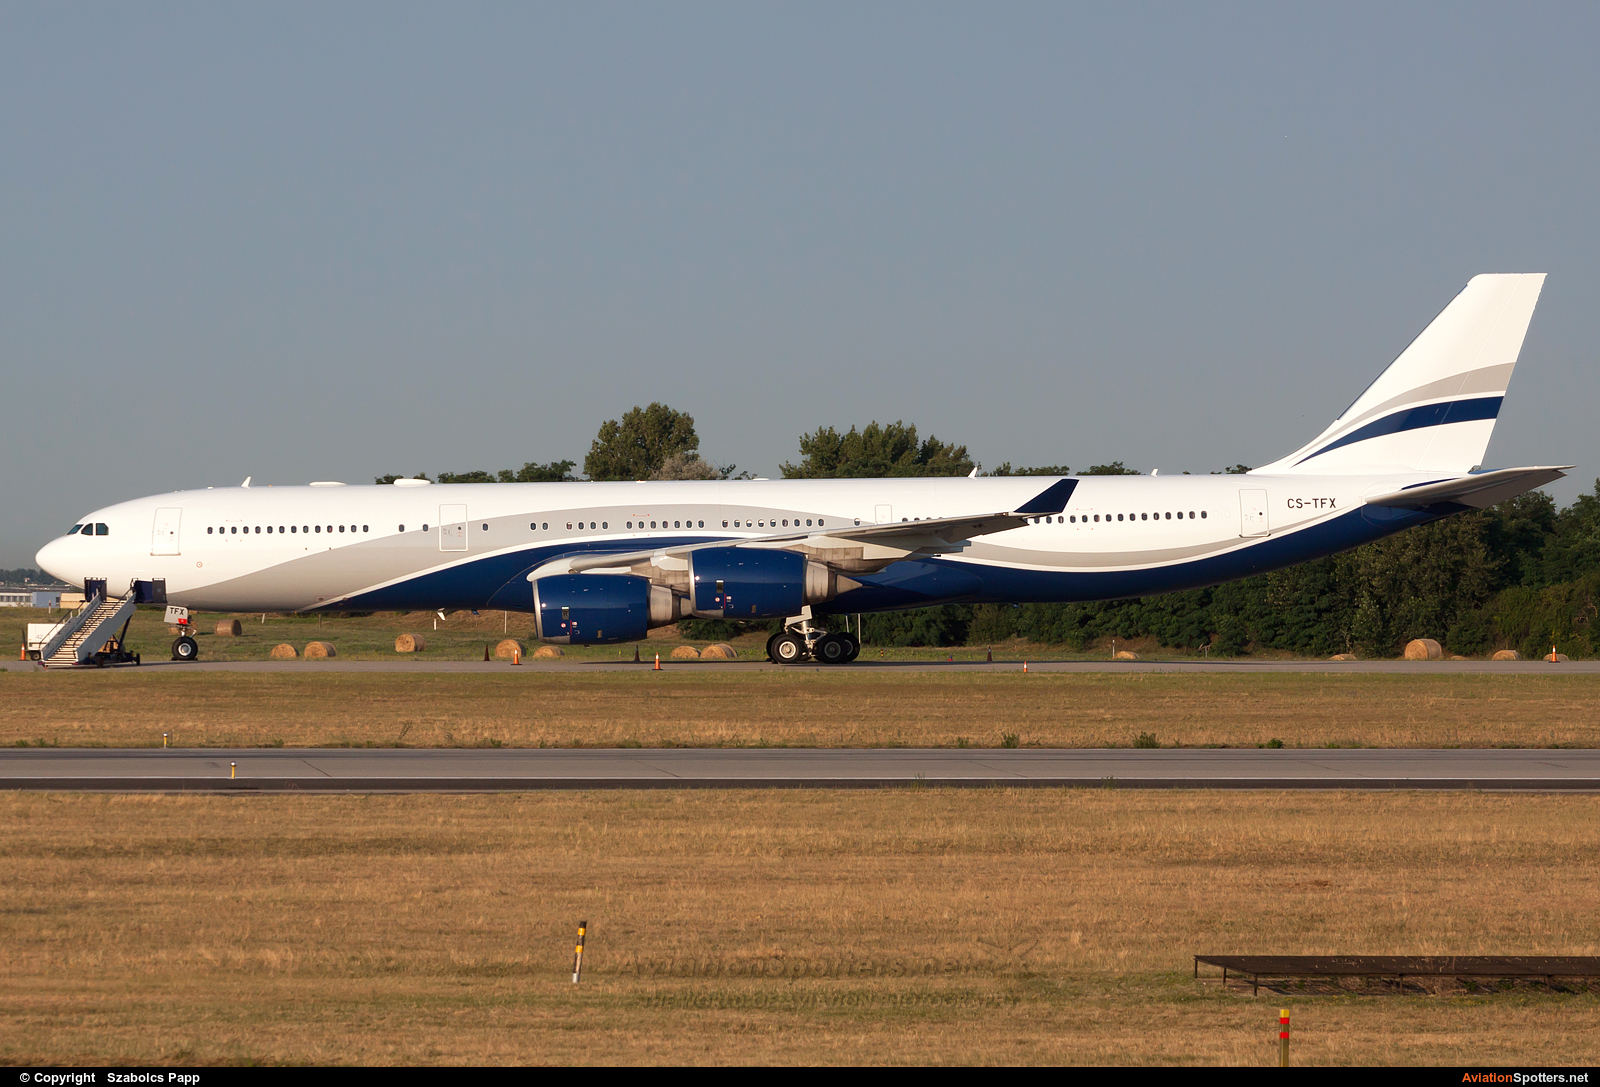 Arik Air  -  A340-500  (CS-TFX) By Szabolcs Papp (mr.szabi)